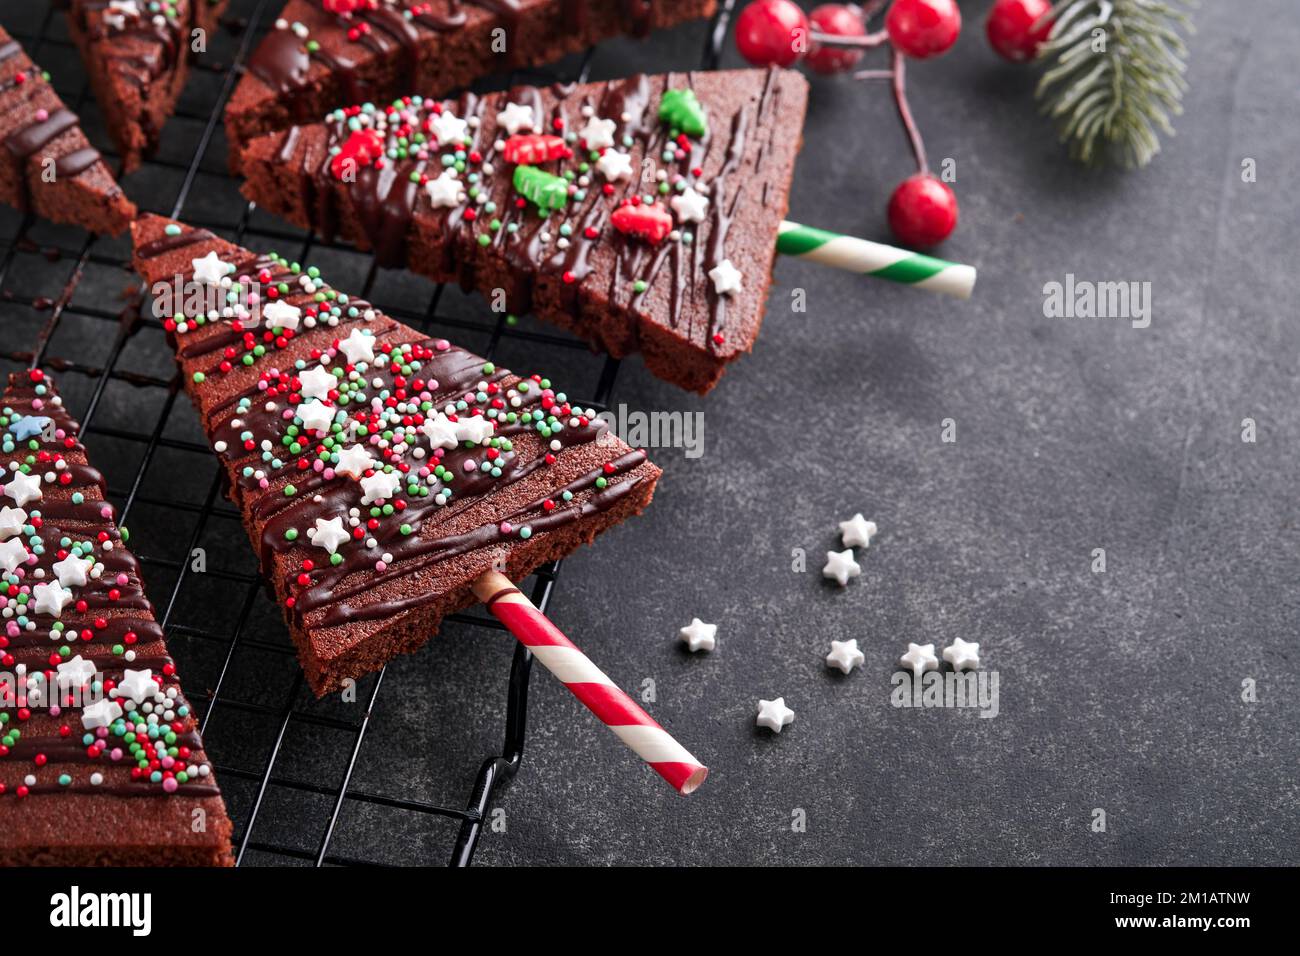 Brownie al cioccolato albero di Natale con glassa al cioccolato e spolverate festive sulla tavola di pietra. Natale cibo idee dolce fatto in casa Natale vacanze pa Foto Stock